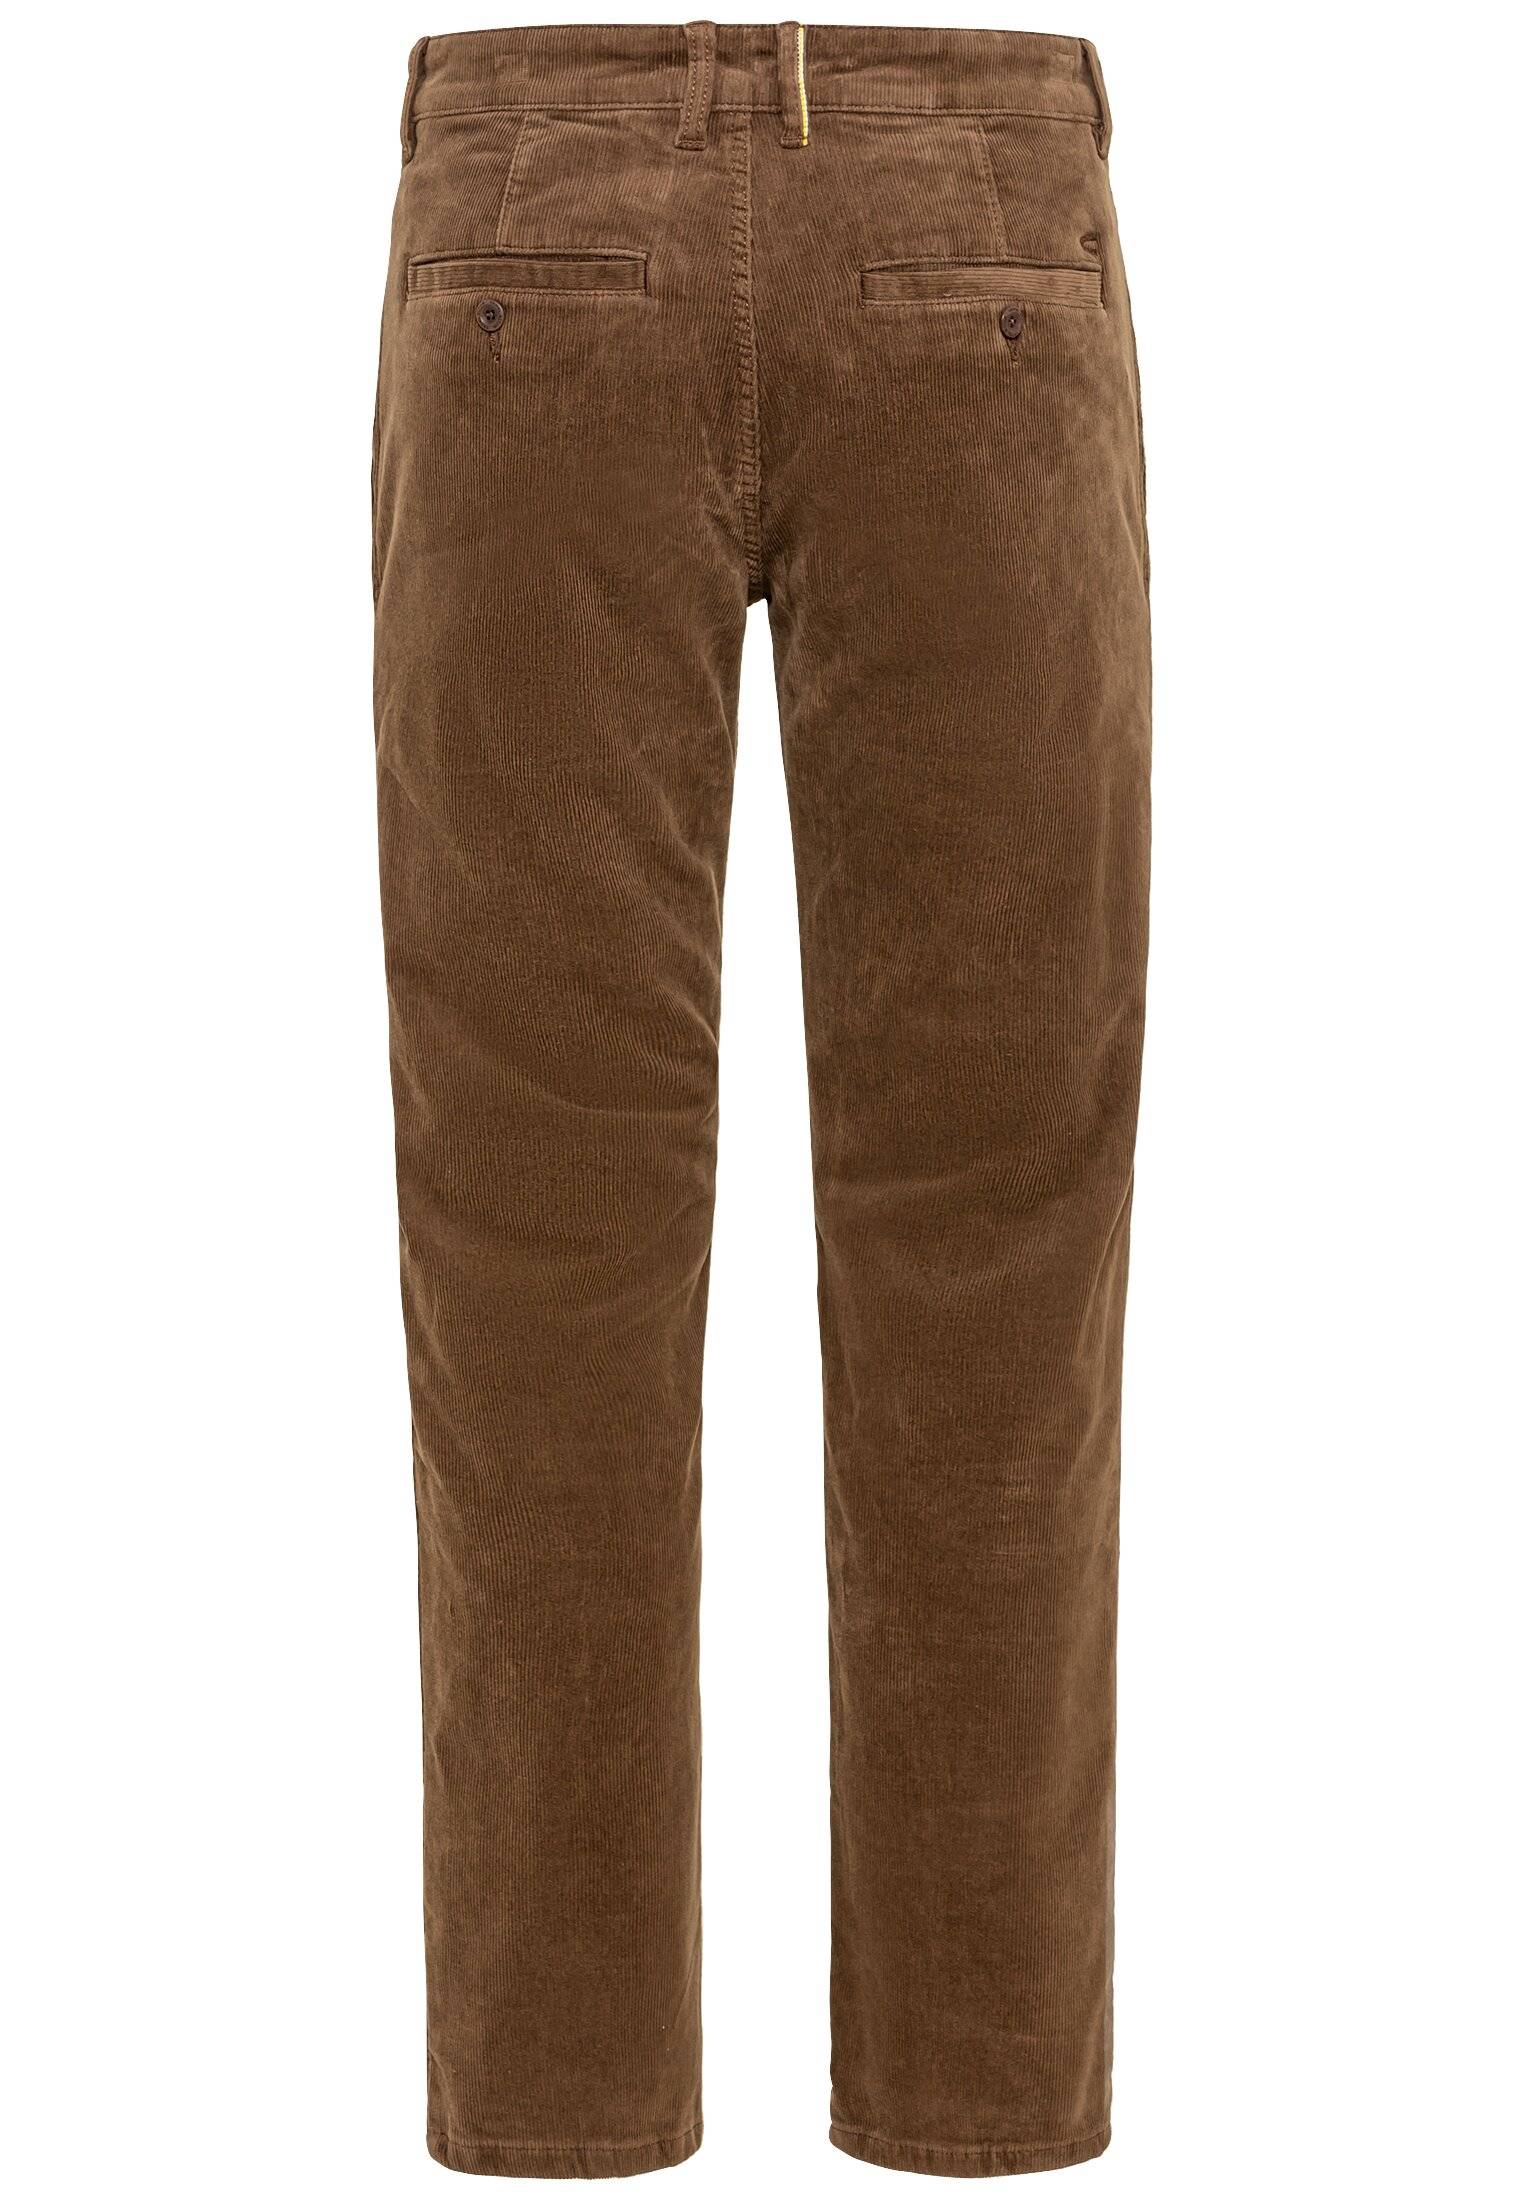 Мужские брюки Camel Active, коричневые, цвет коричневый, размер 34 - фото 2